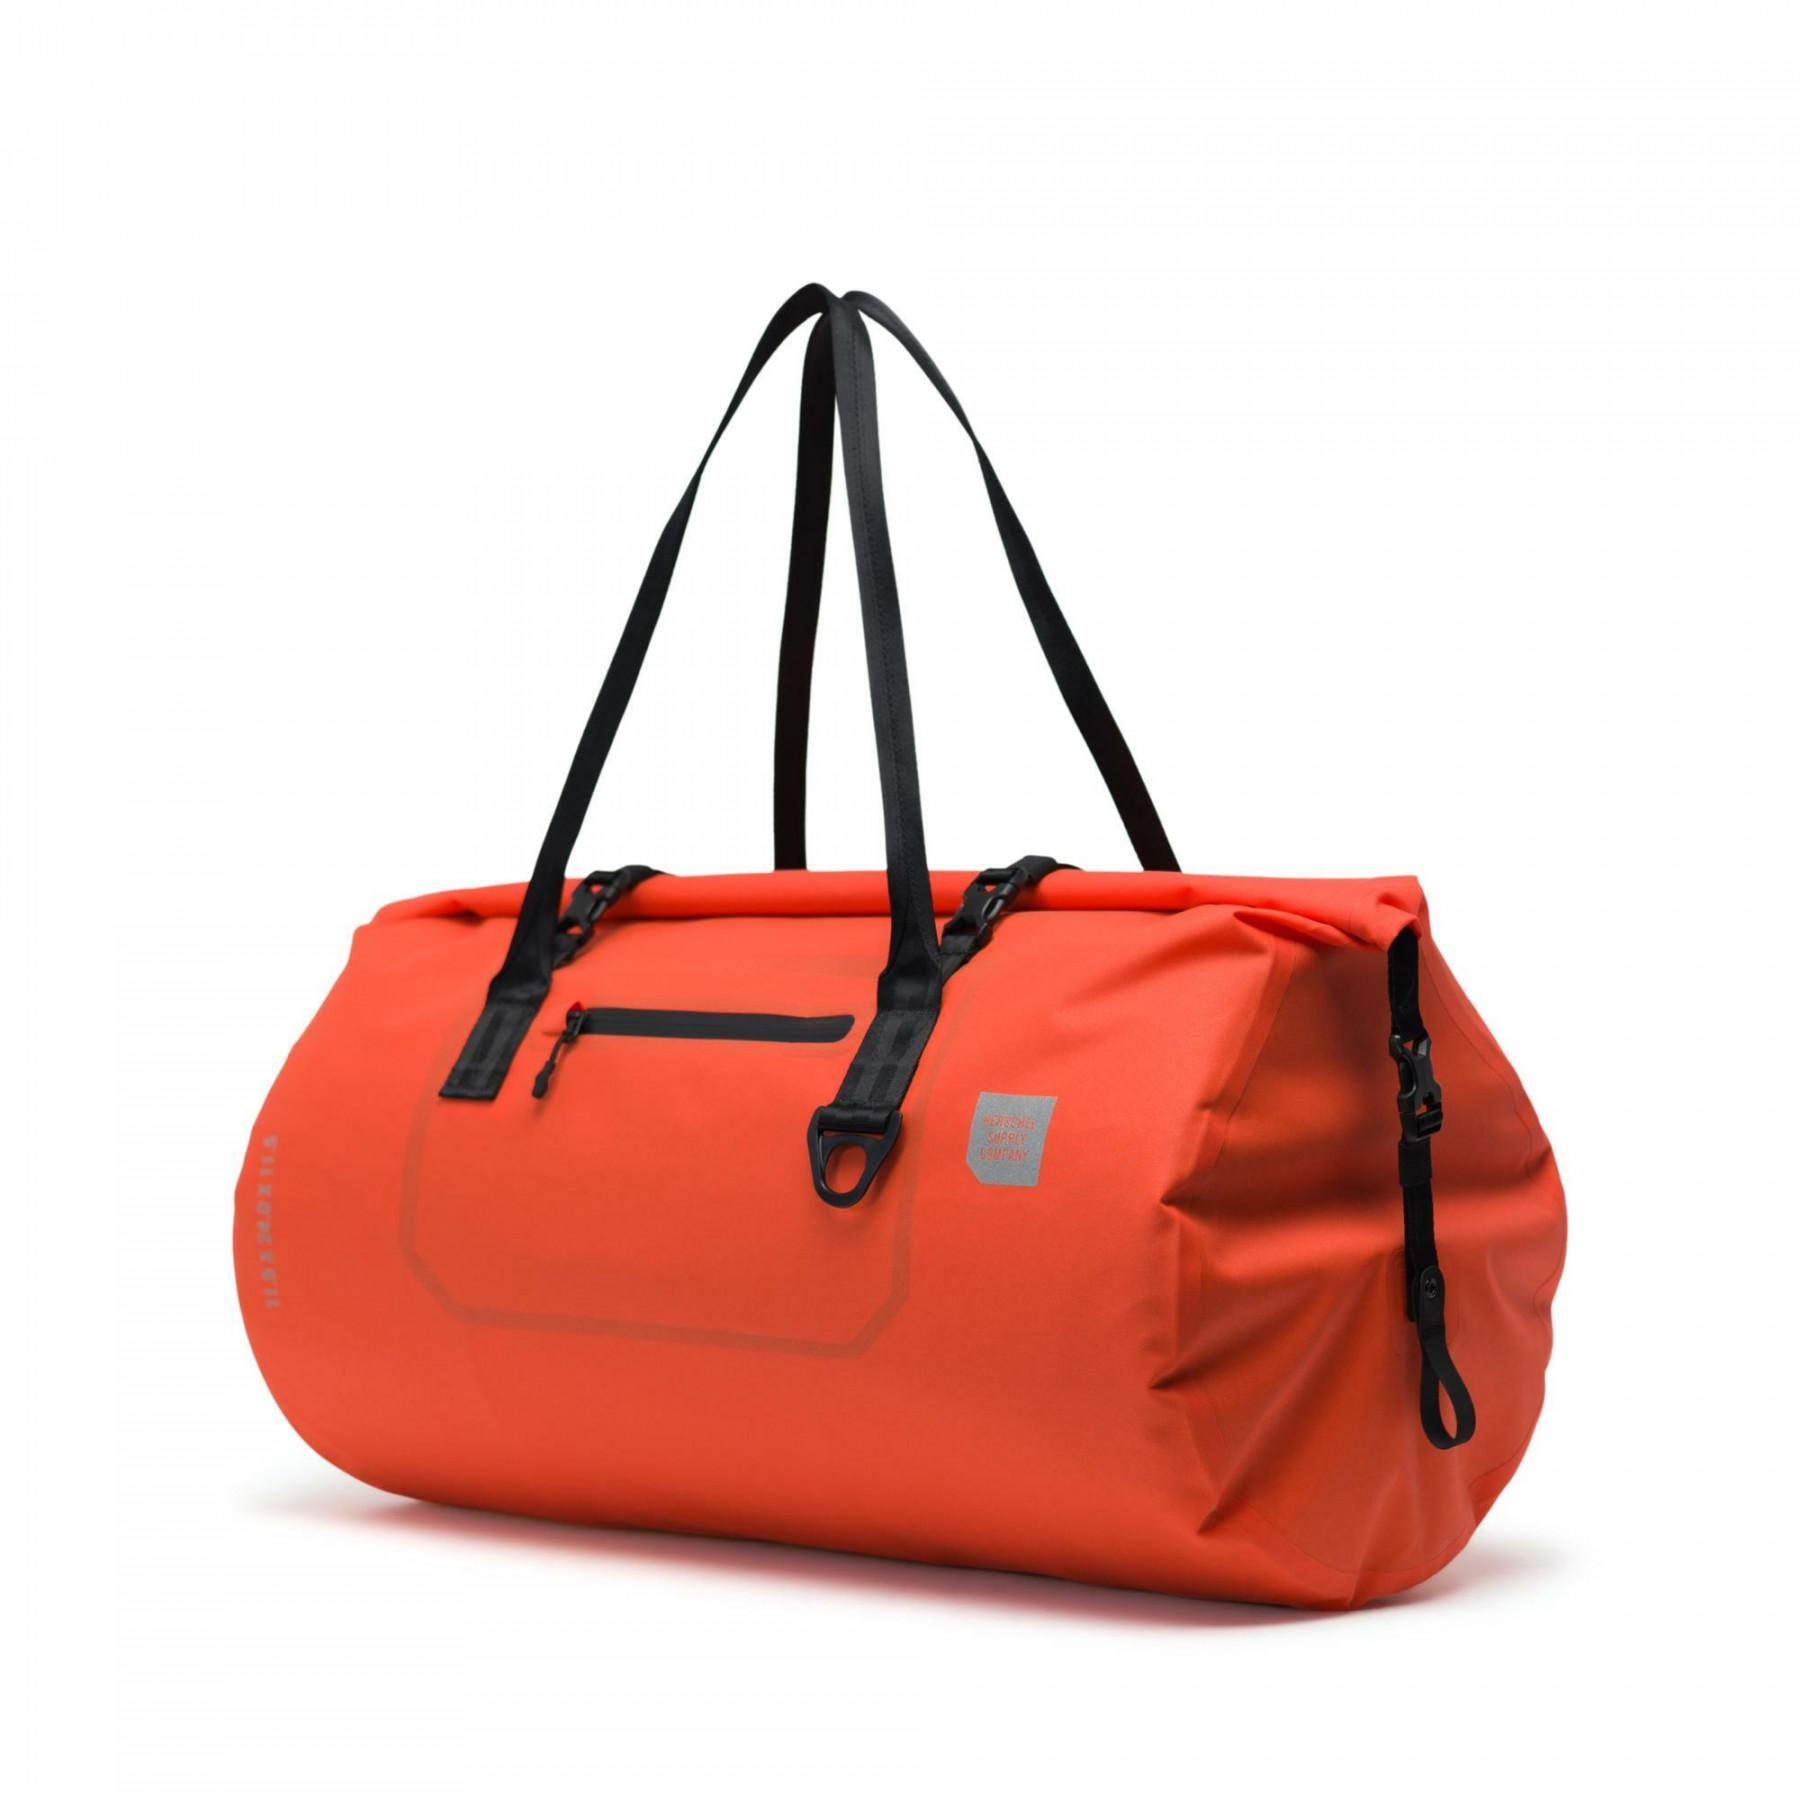 Waterproof travel bag Herschel Coast